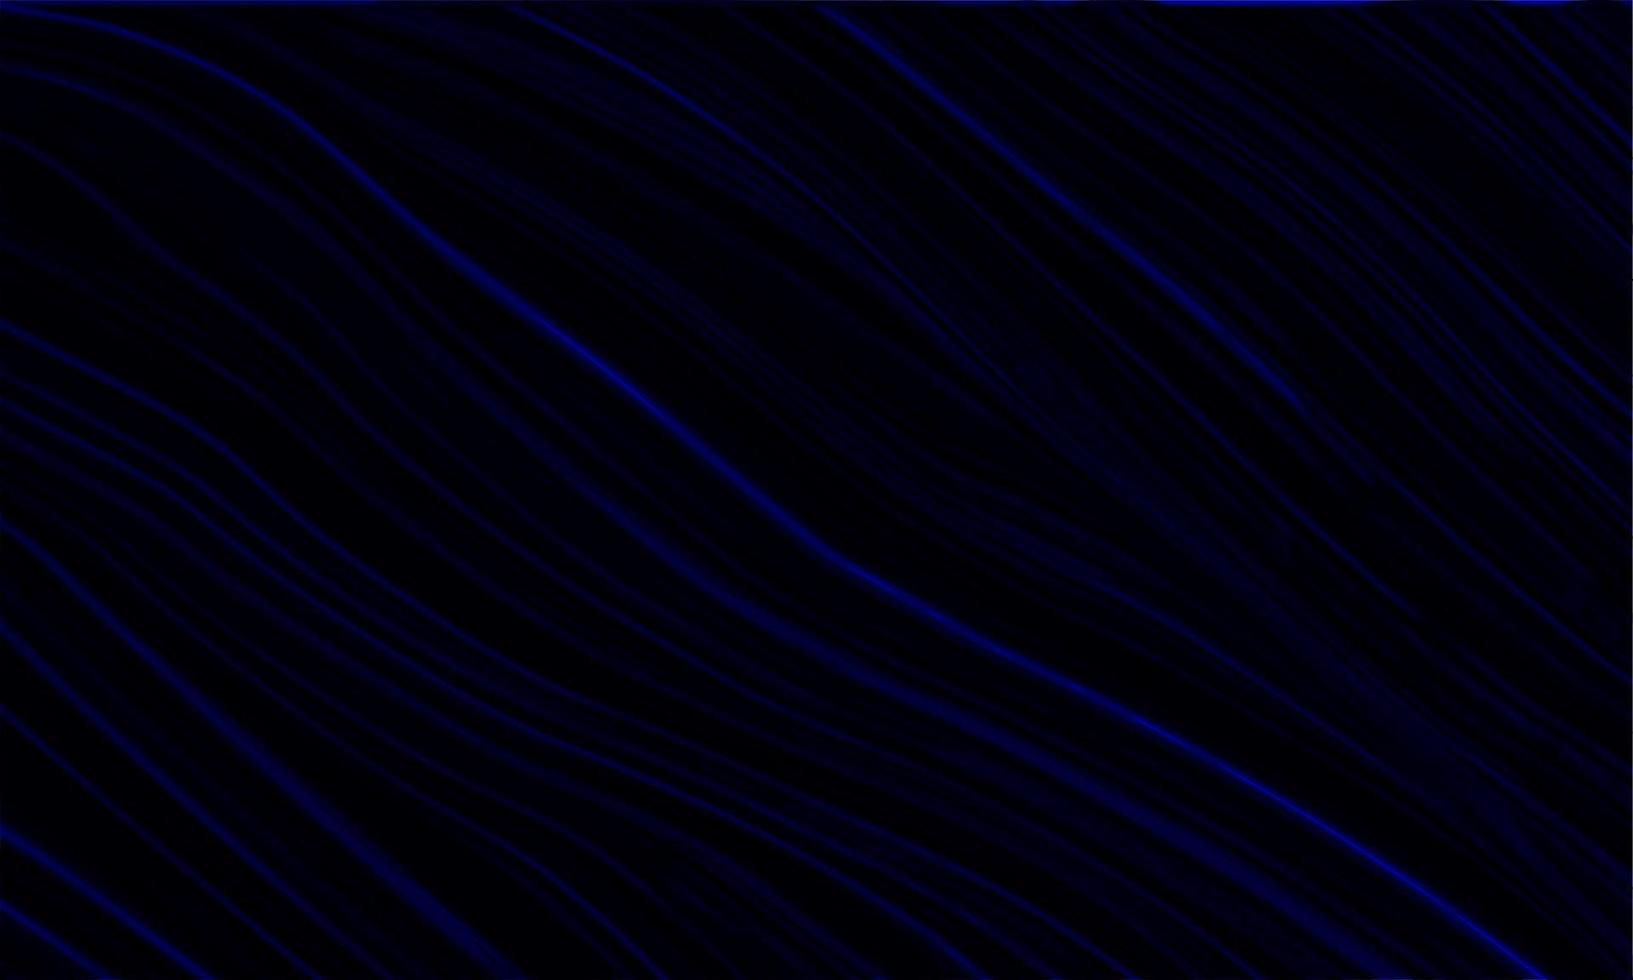 abstrakter blauer flüssiger Marmorhintergrund vektor